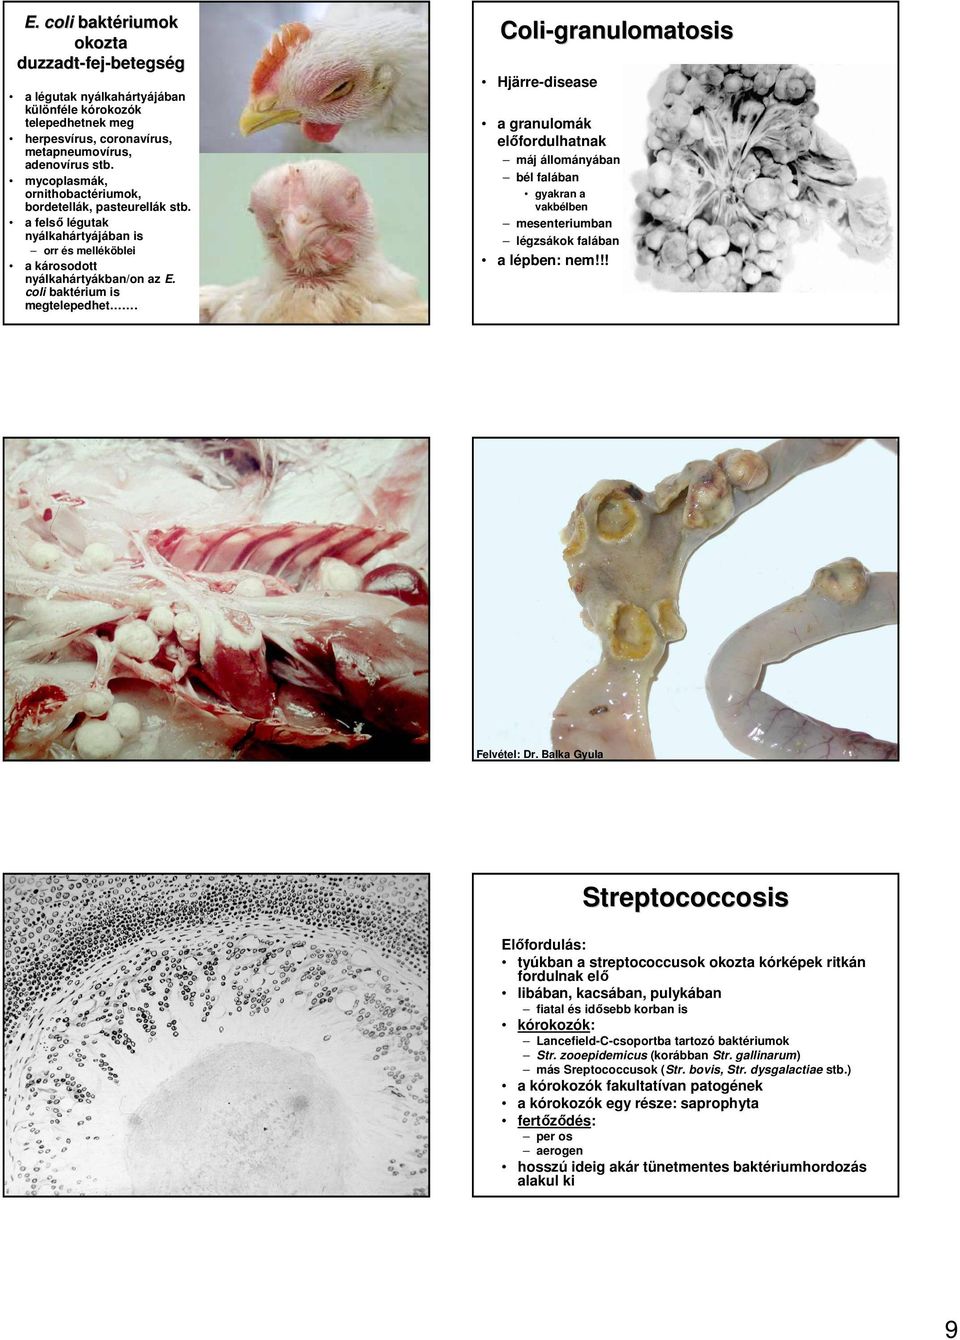 Coli-granulomatosis Hjärre-disease a granulomák elıfordulhatnak máj állományában bél falában gyakran a vakbélben mesenteriumban légzsákok falában a lépben: nem!!! Felvétel: Dr.